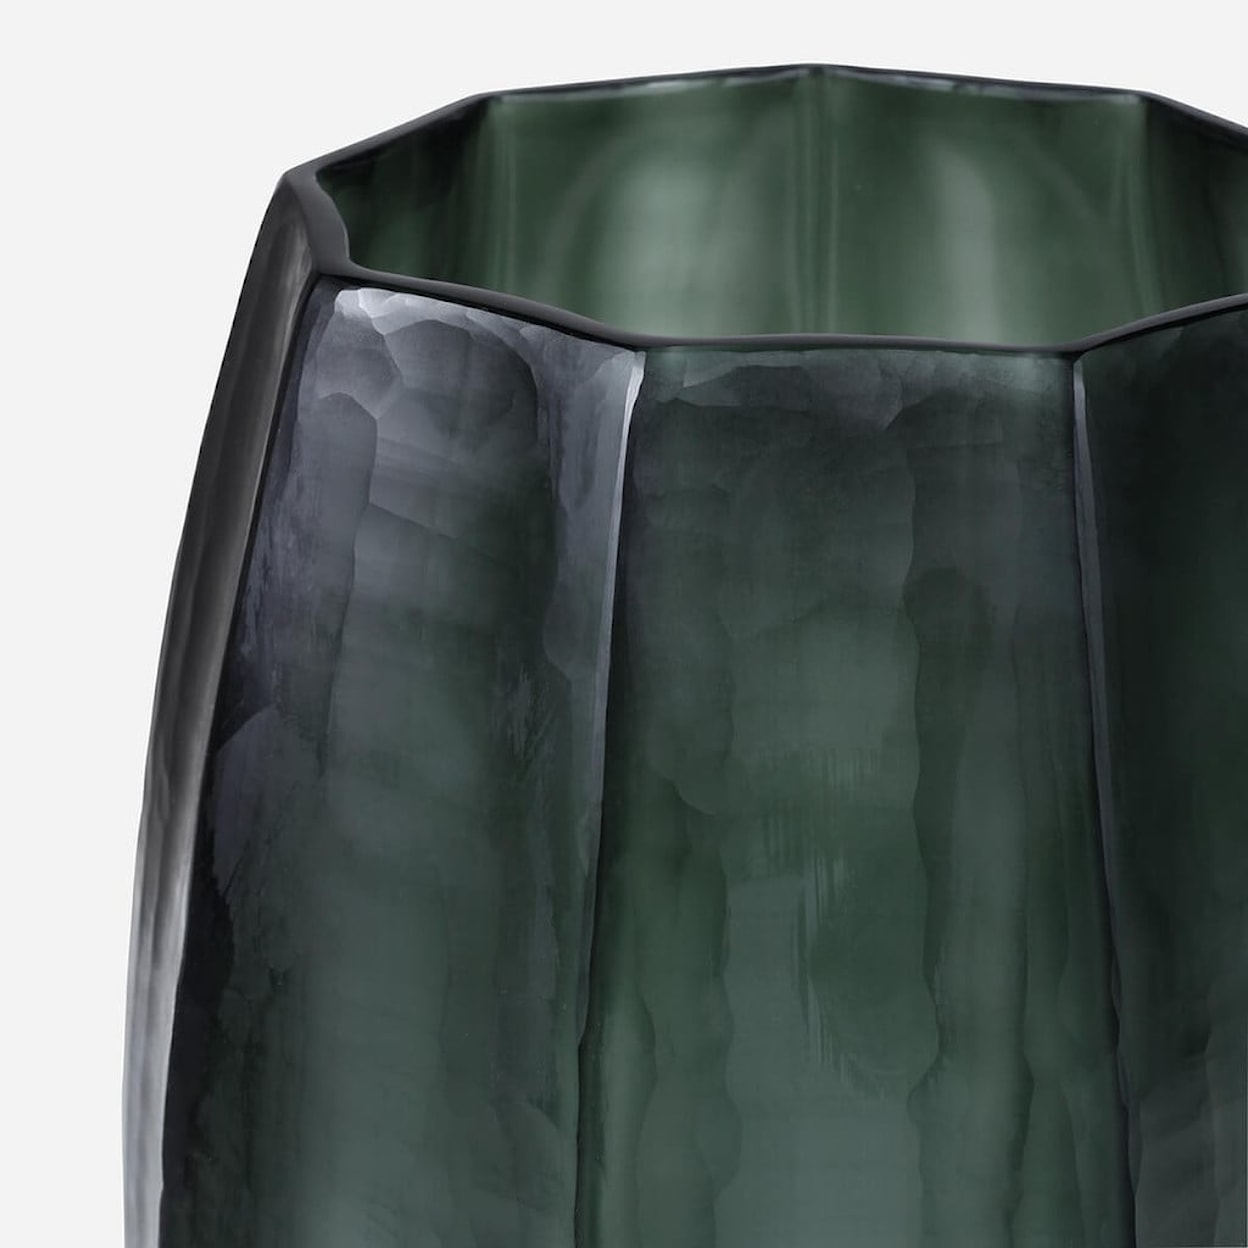 BOBO Intriguing Objects BOBO Intriguing Objects Loire Light Green Steel Glass Vase - Xlarge